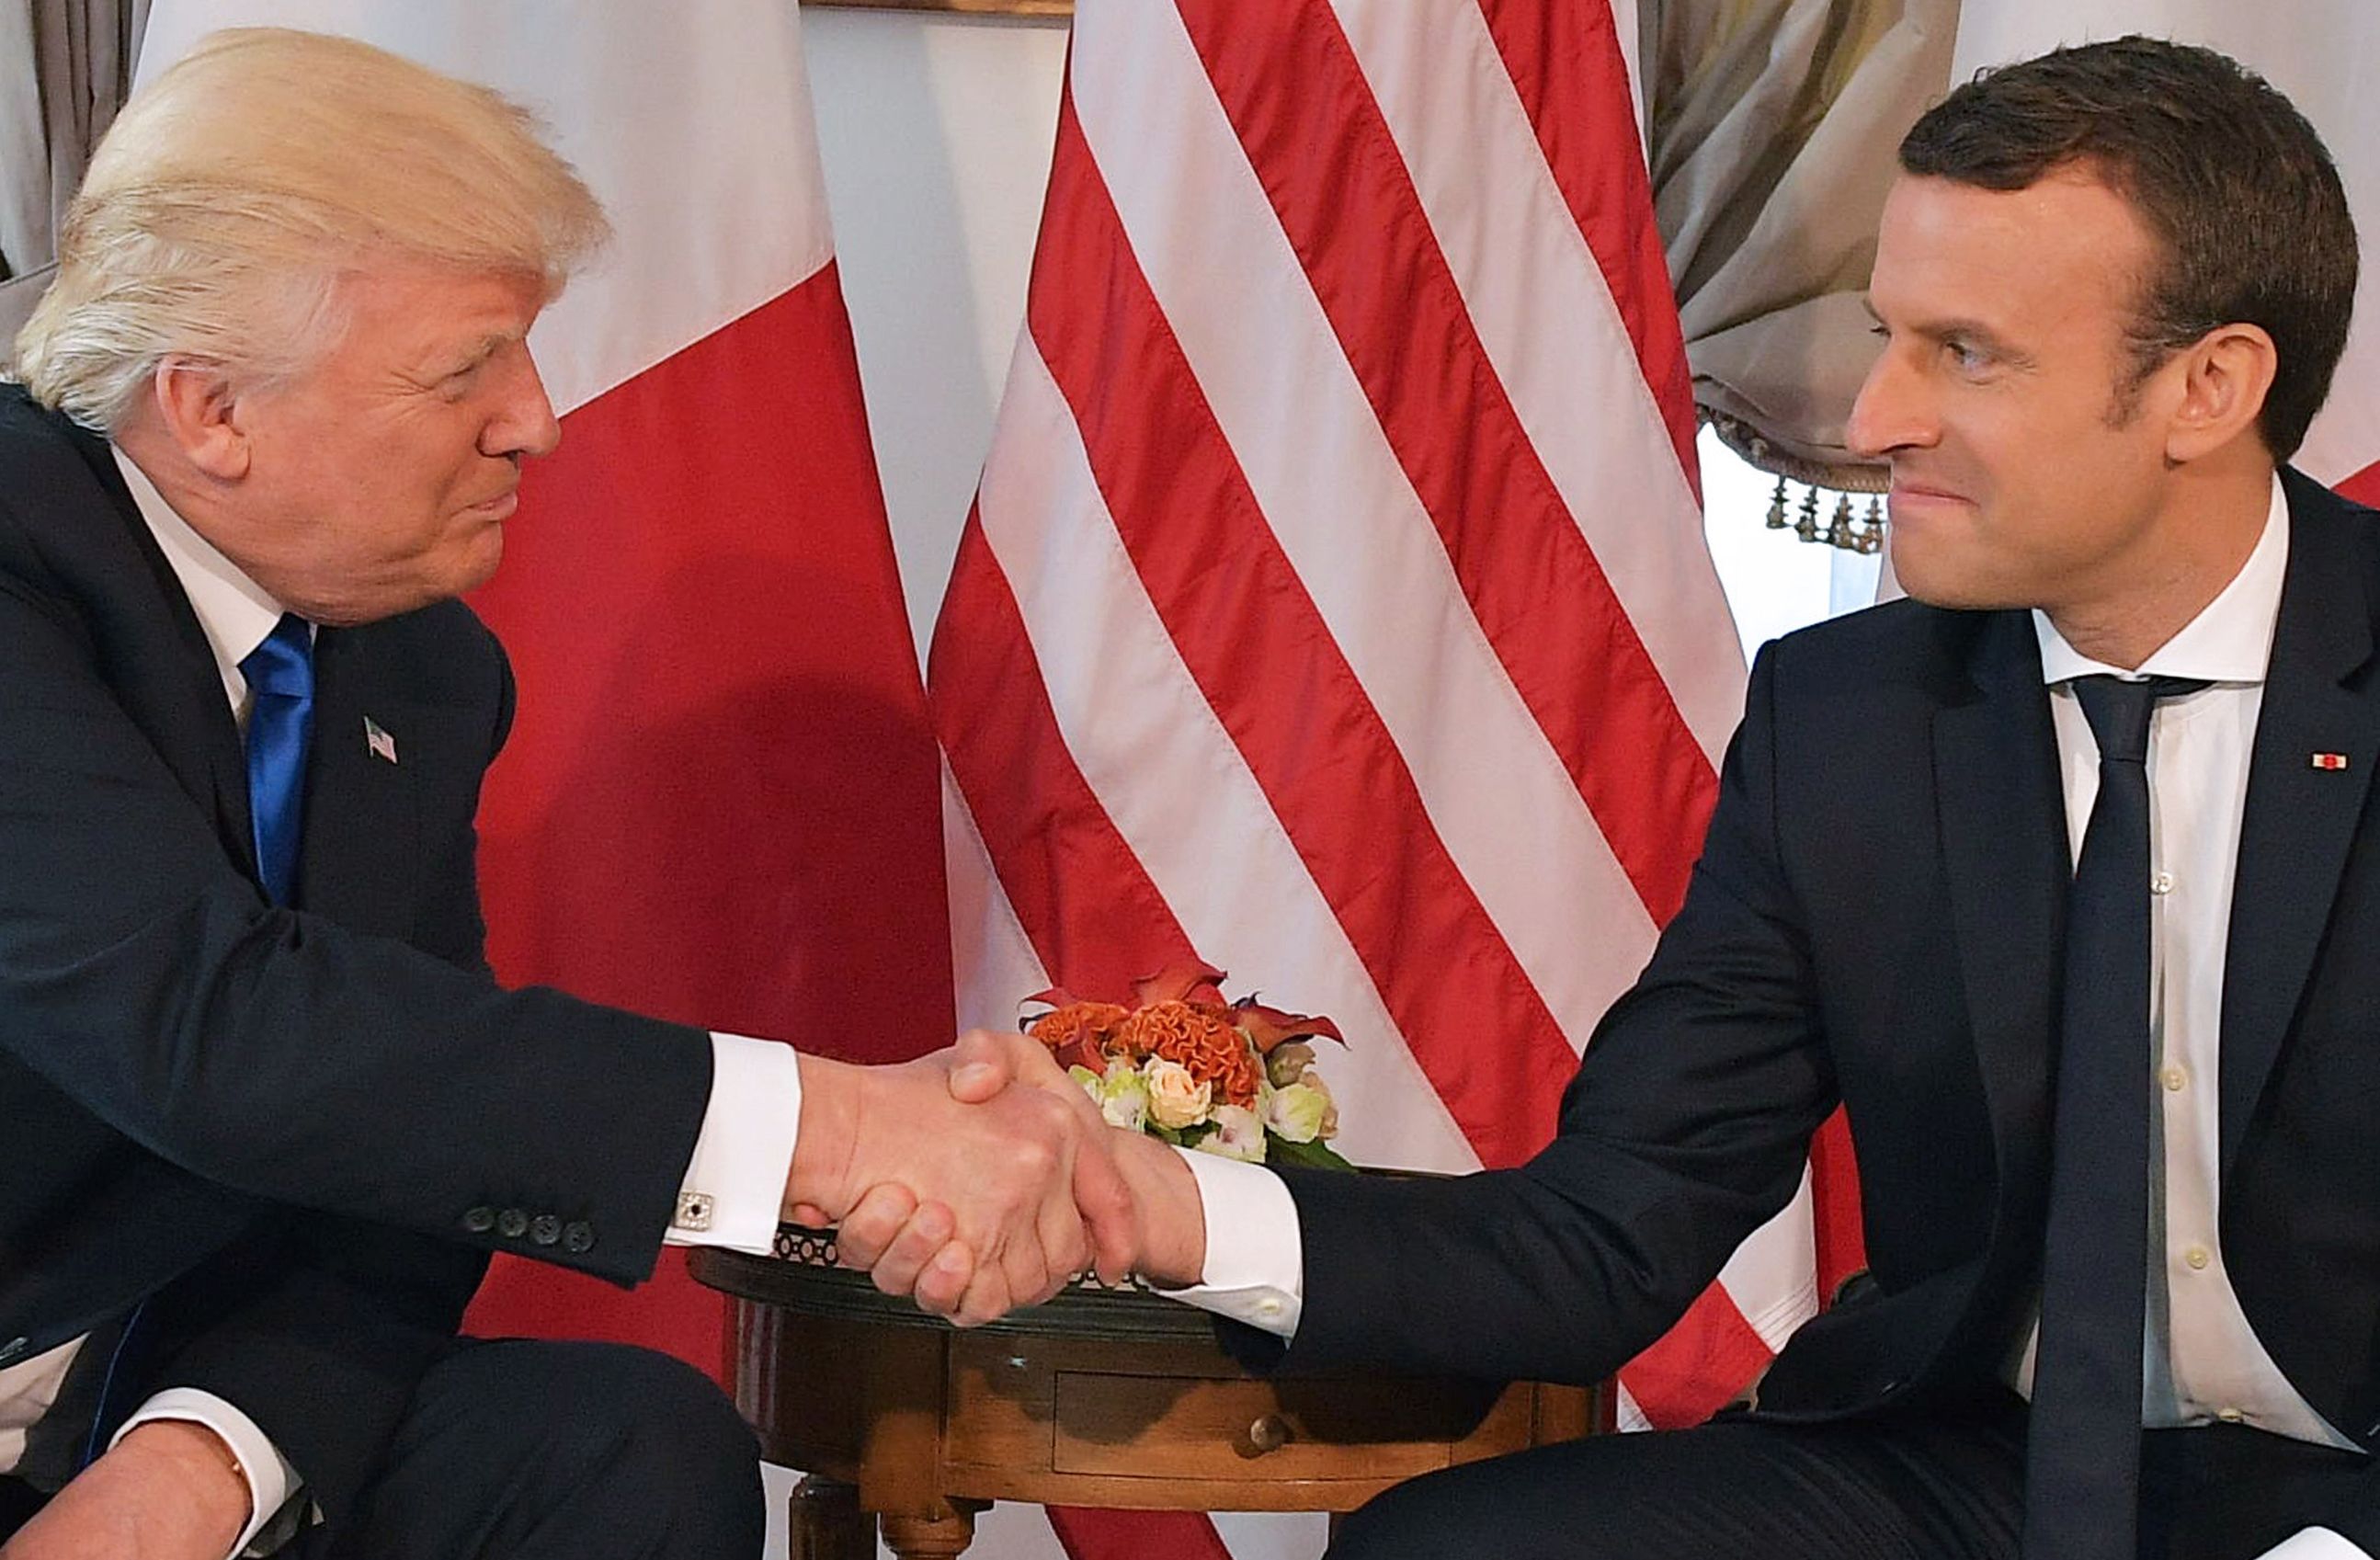 Apretón de manos con Trump fue simbólico: Macron